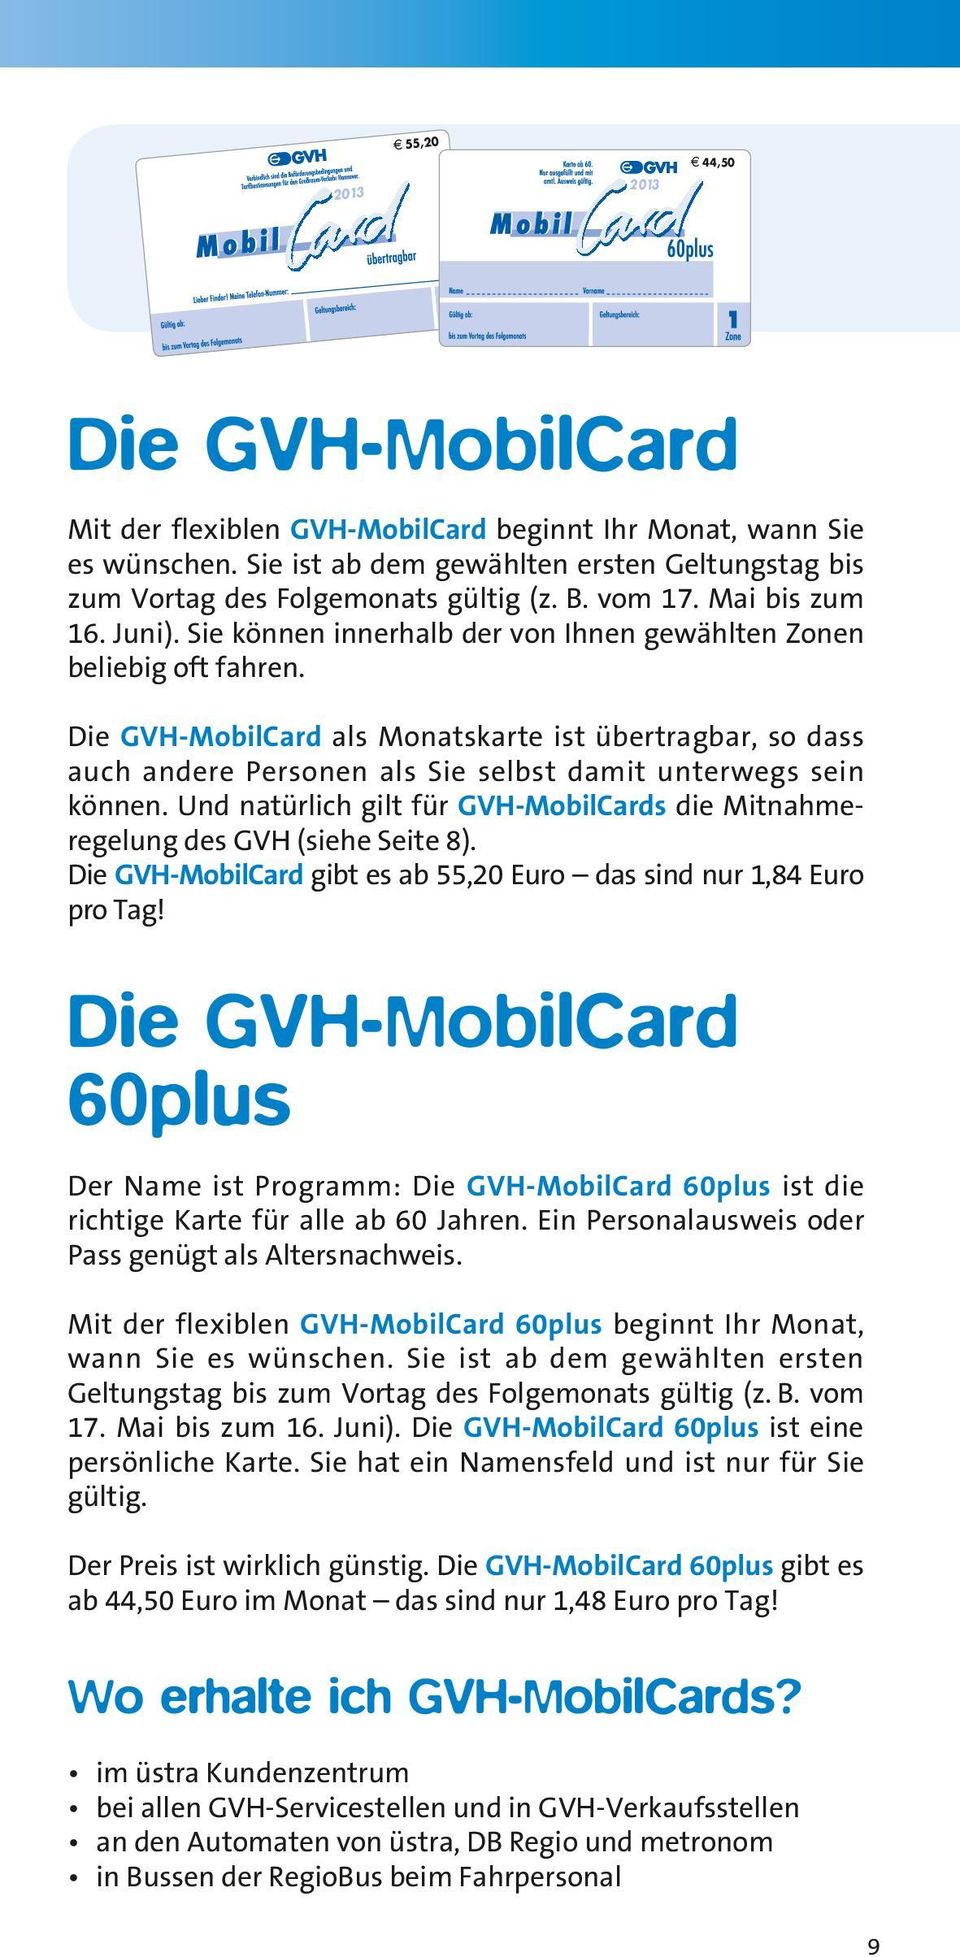 Die GVH-MobilCard als Monatskarte ist übertragbar, so dass auch andere Personen als Sie selbst damit unterwegs sein können.